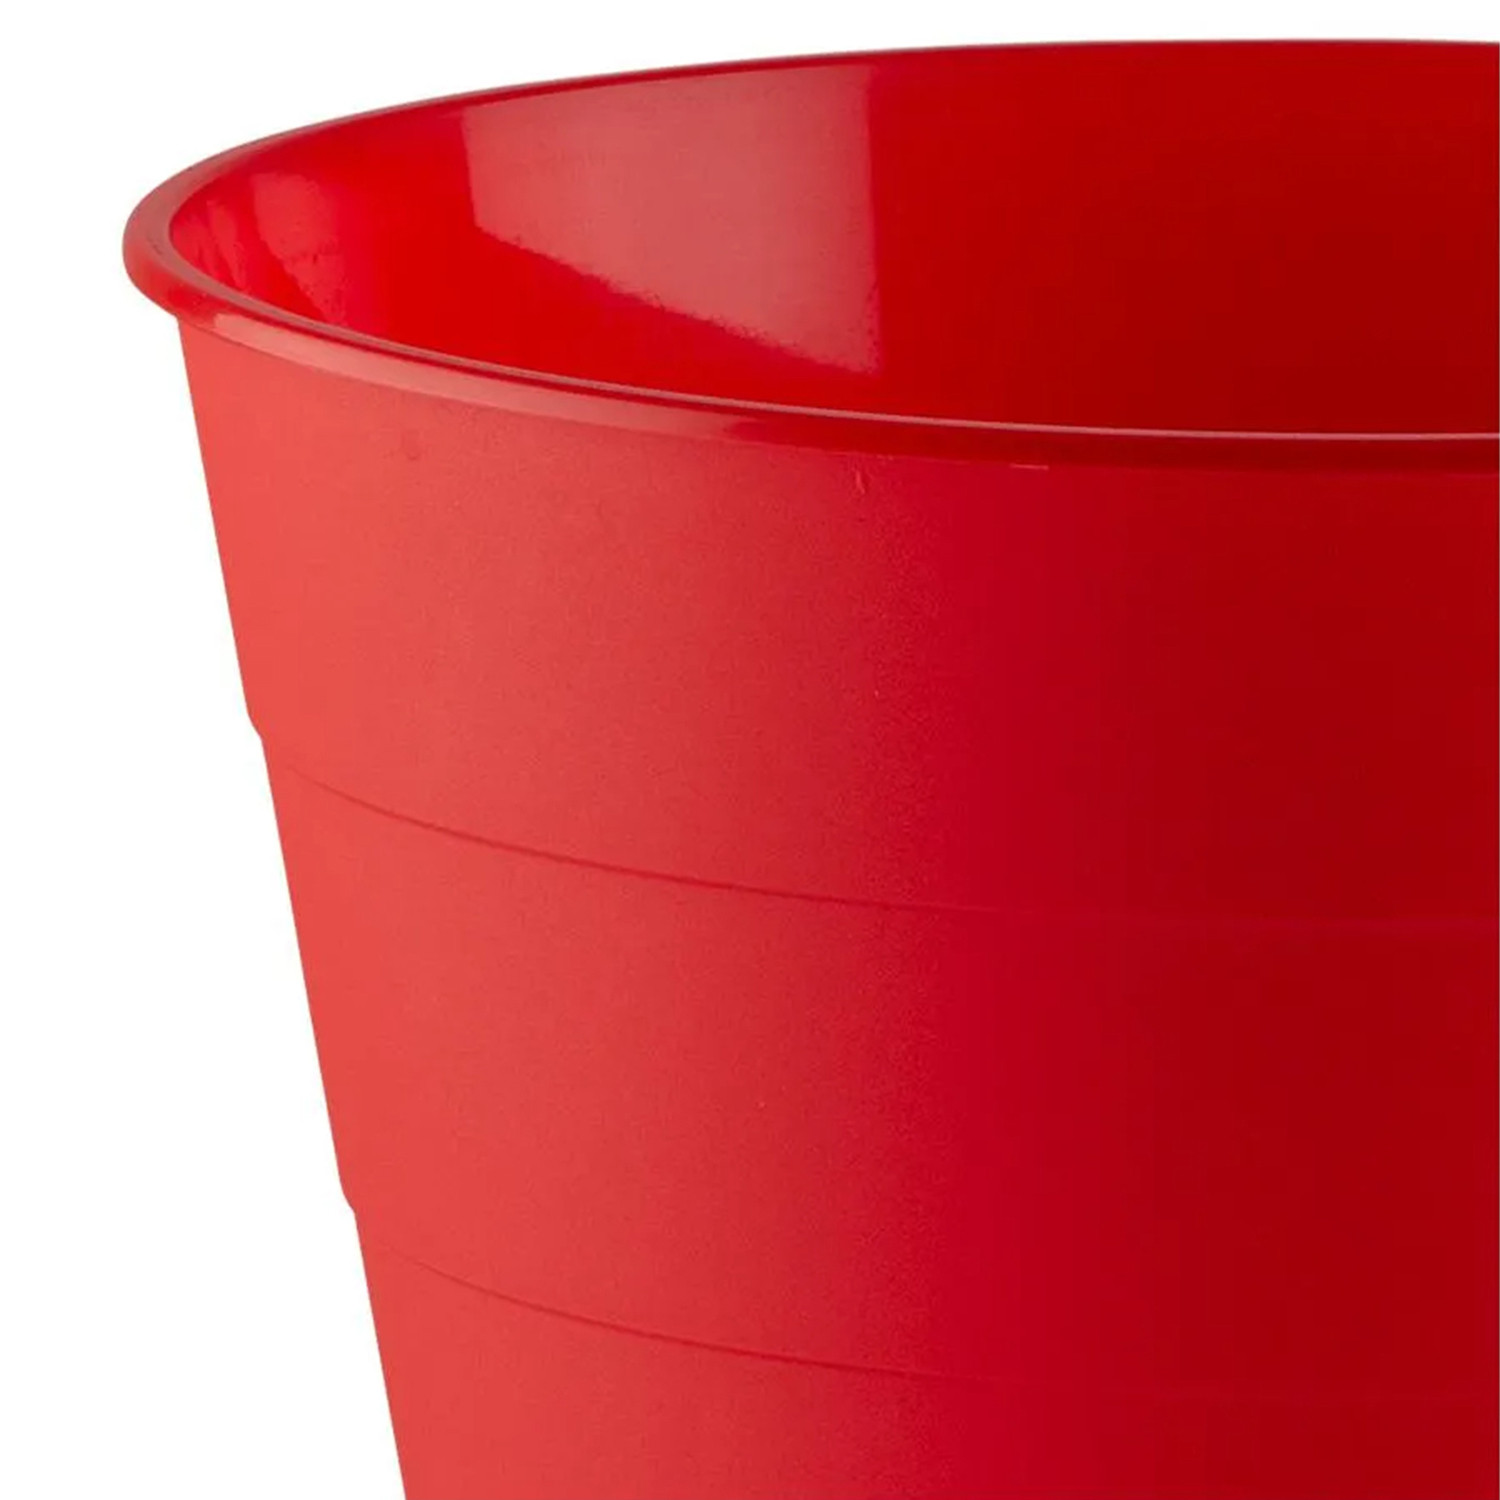 Kuber Industries Dustbin|Plastic Dustbin|Dustbins for Kitchen|Dustbin For Bedroom,Hall|Dustbin For office|8 Litre Dustbin (Red)